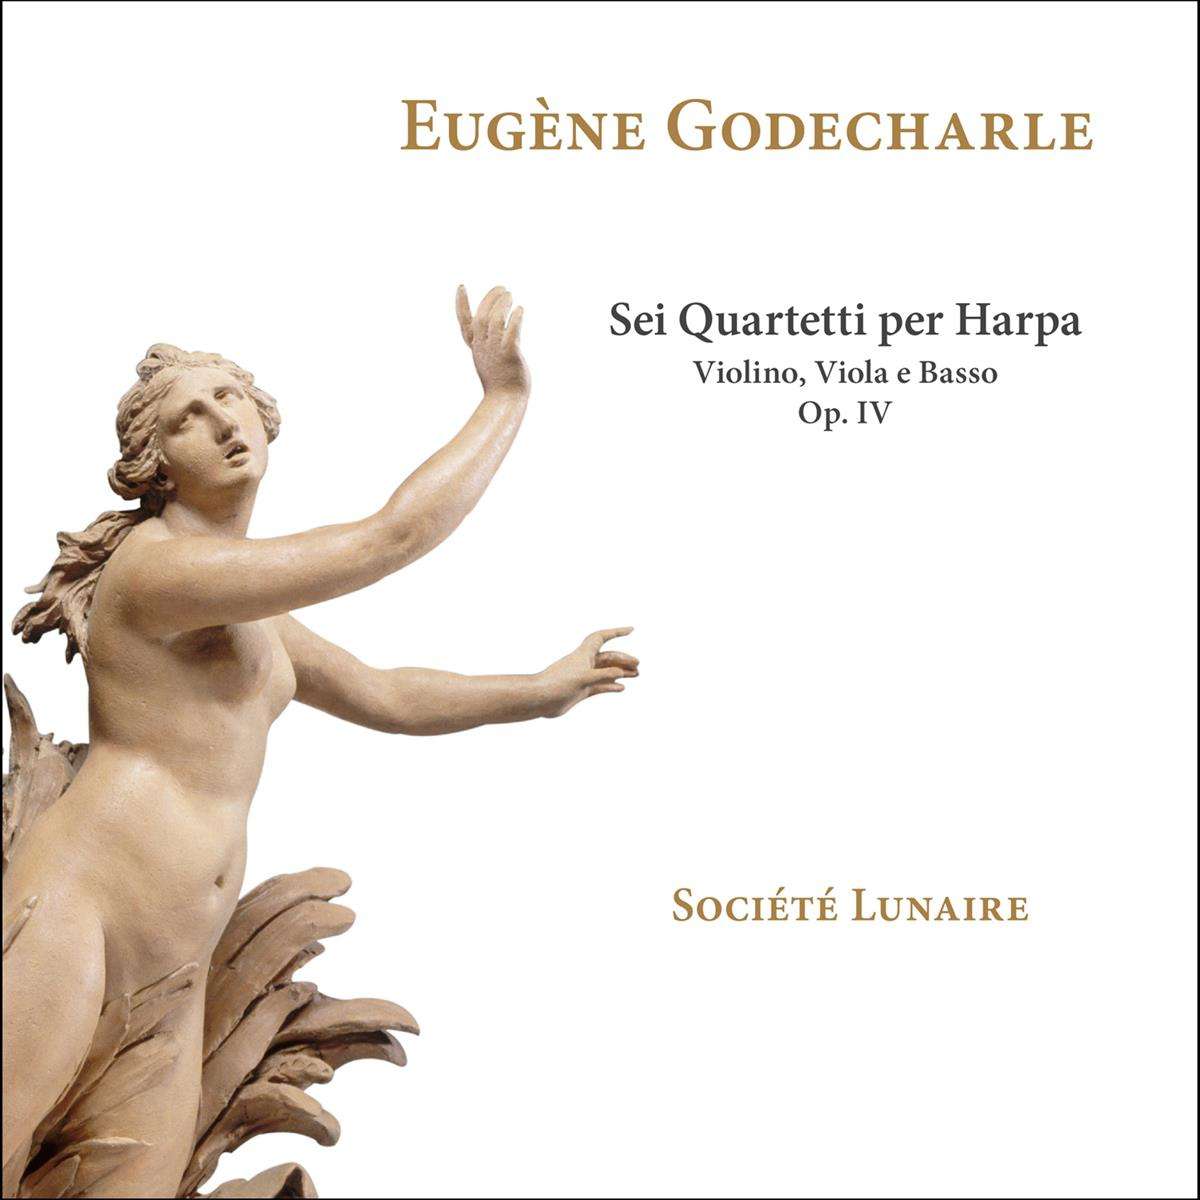 Societe Lunaire - Eugene Godecharle: Sei Quartetti Per Harpa, Violino, Viola E Basso, Op. Iv